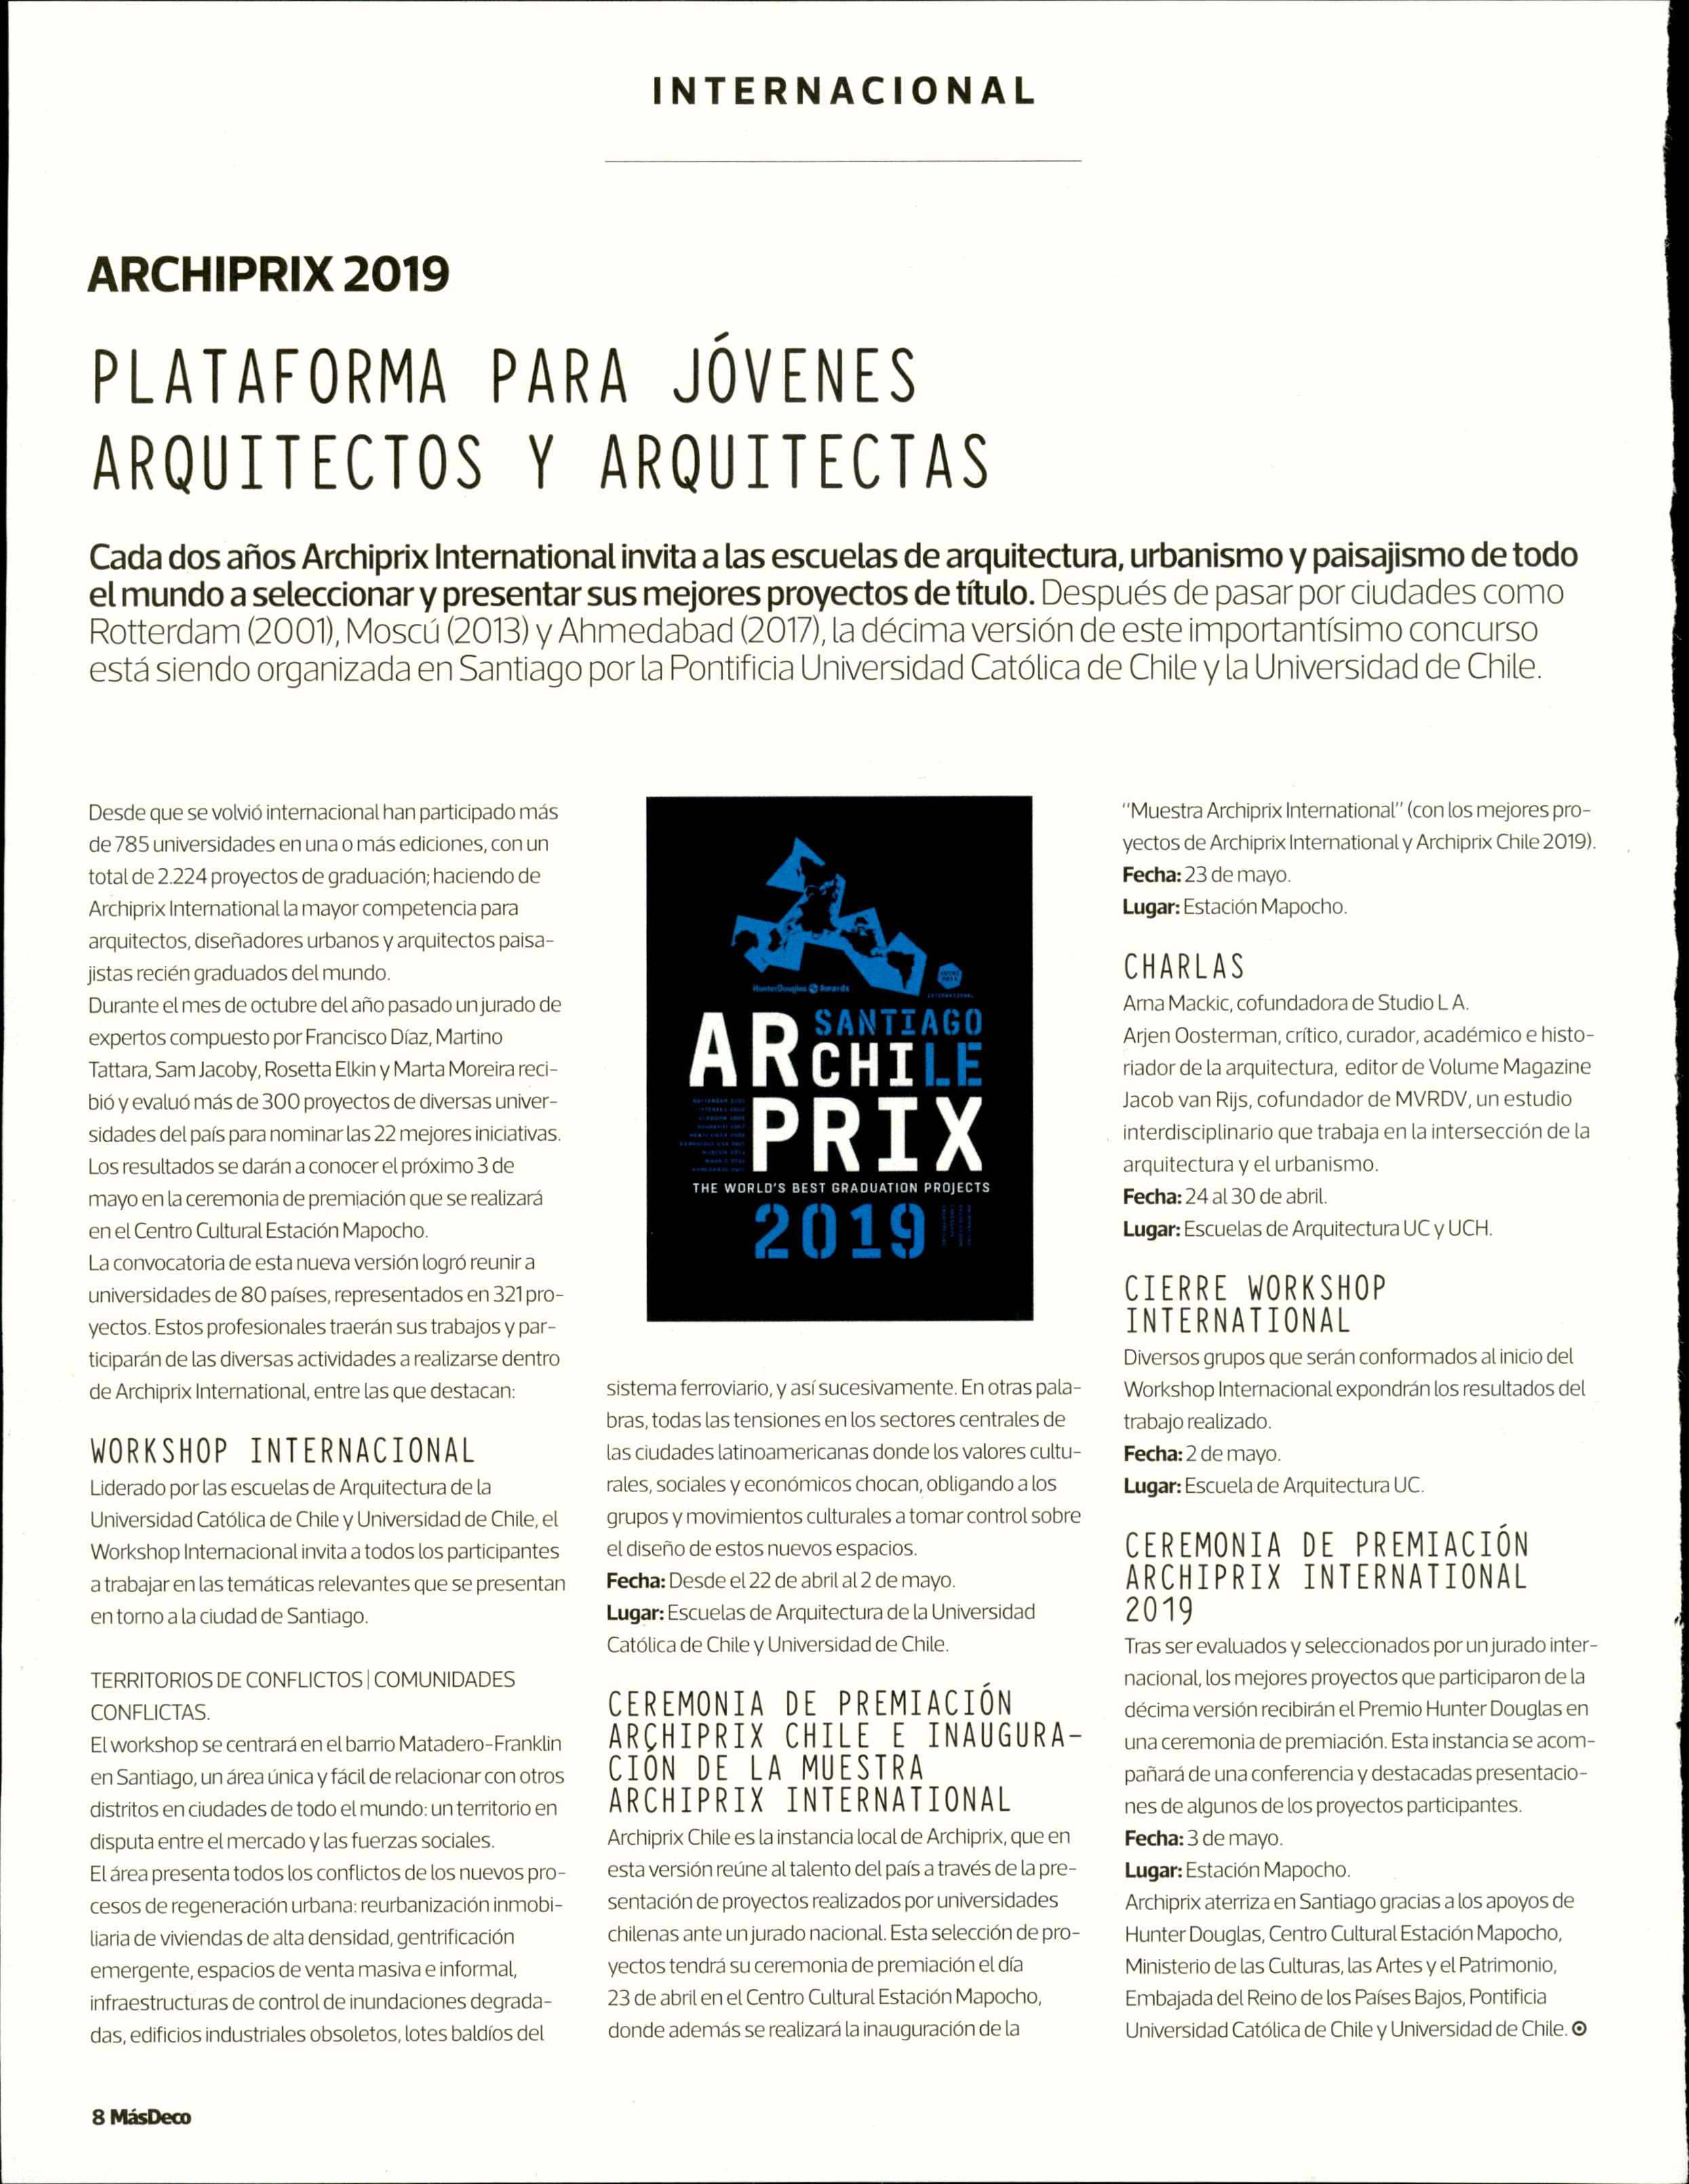 19-04-19_Archiprix_2019-_Plataforma_para_jovenes_arquitectos_y_arquitectas.JPG